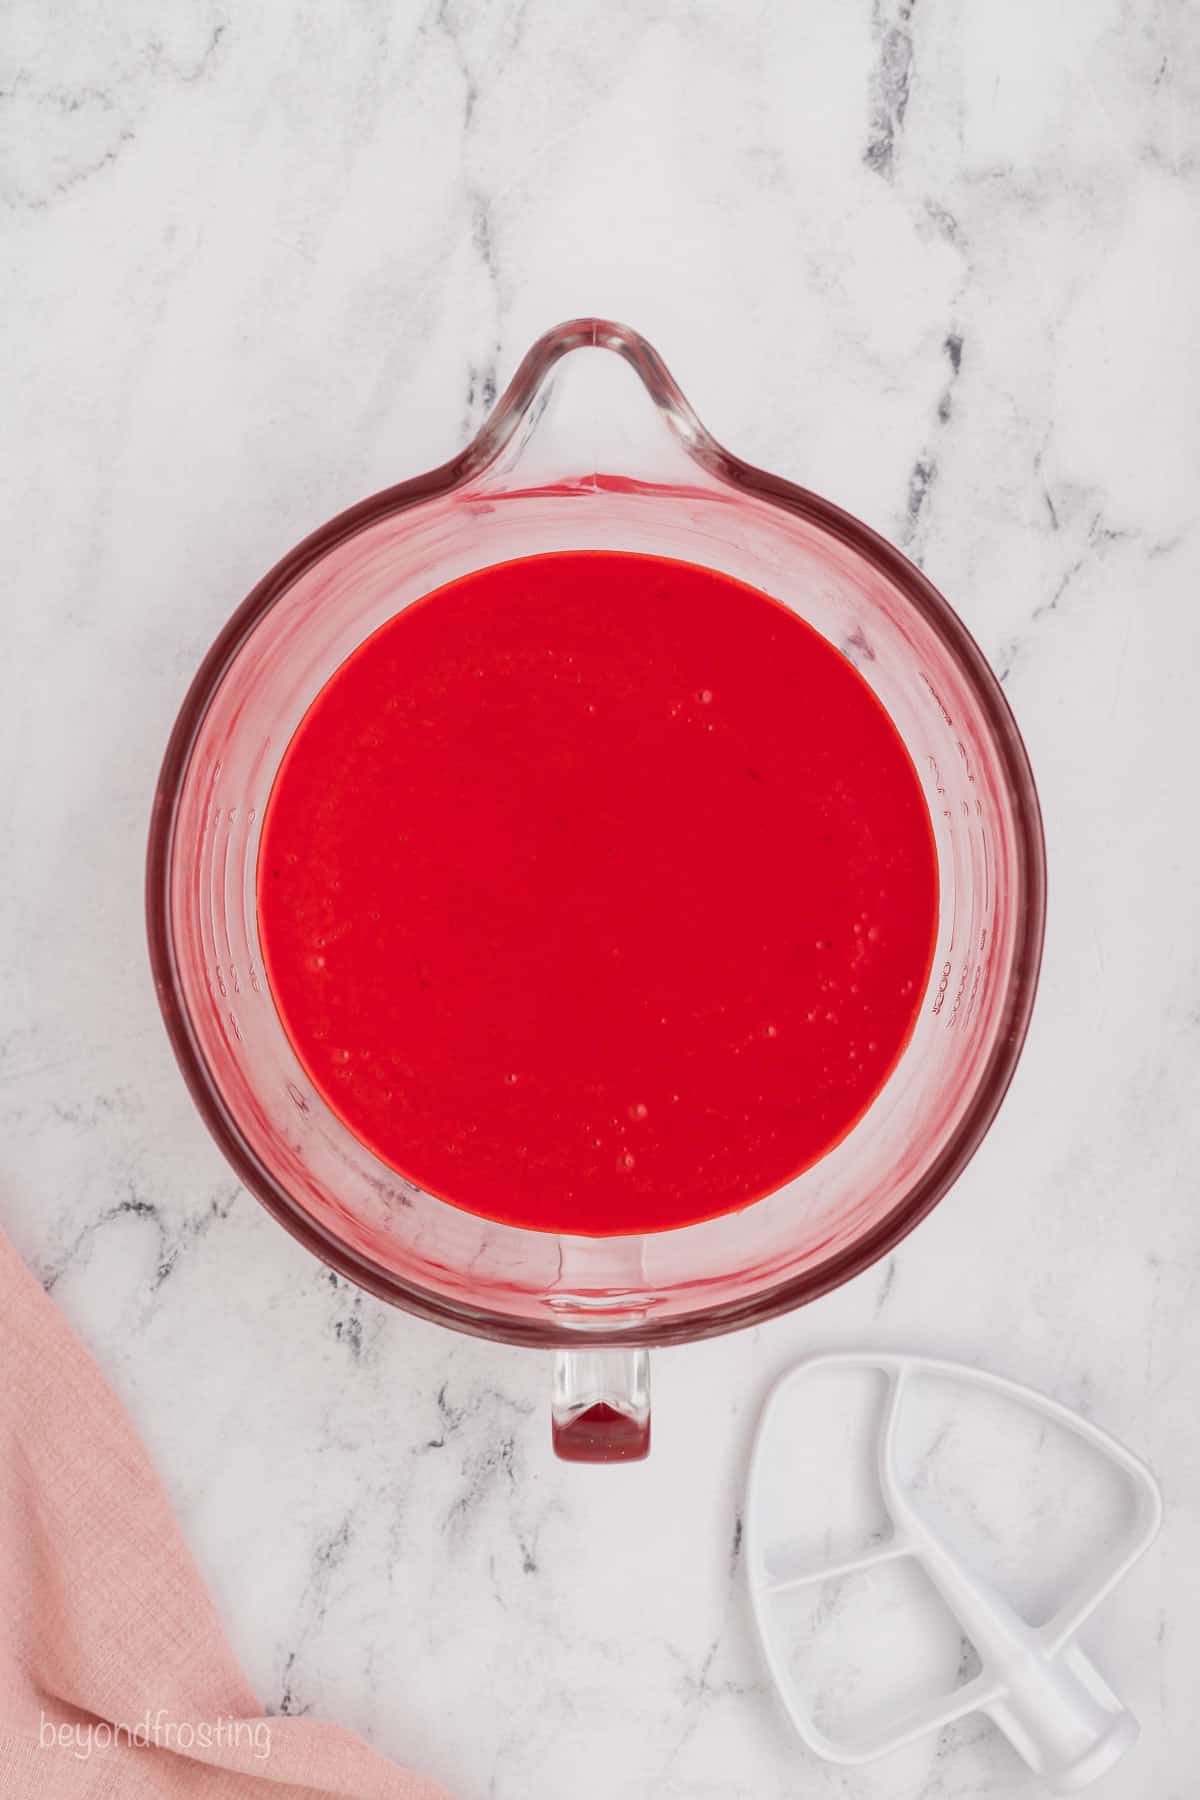 Red velvet cake batter in a glass mixing bowl.